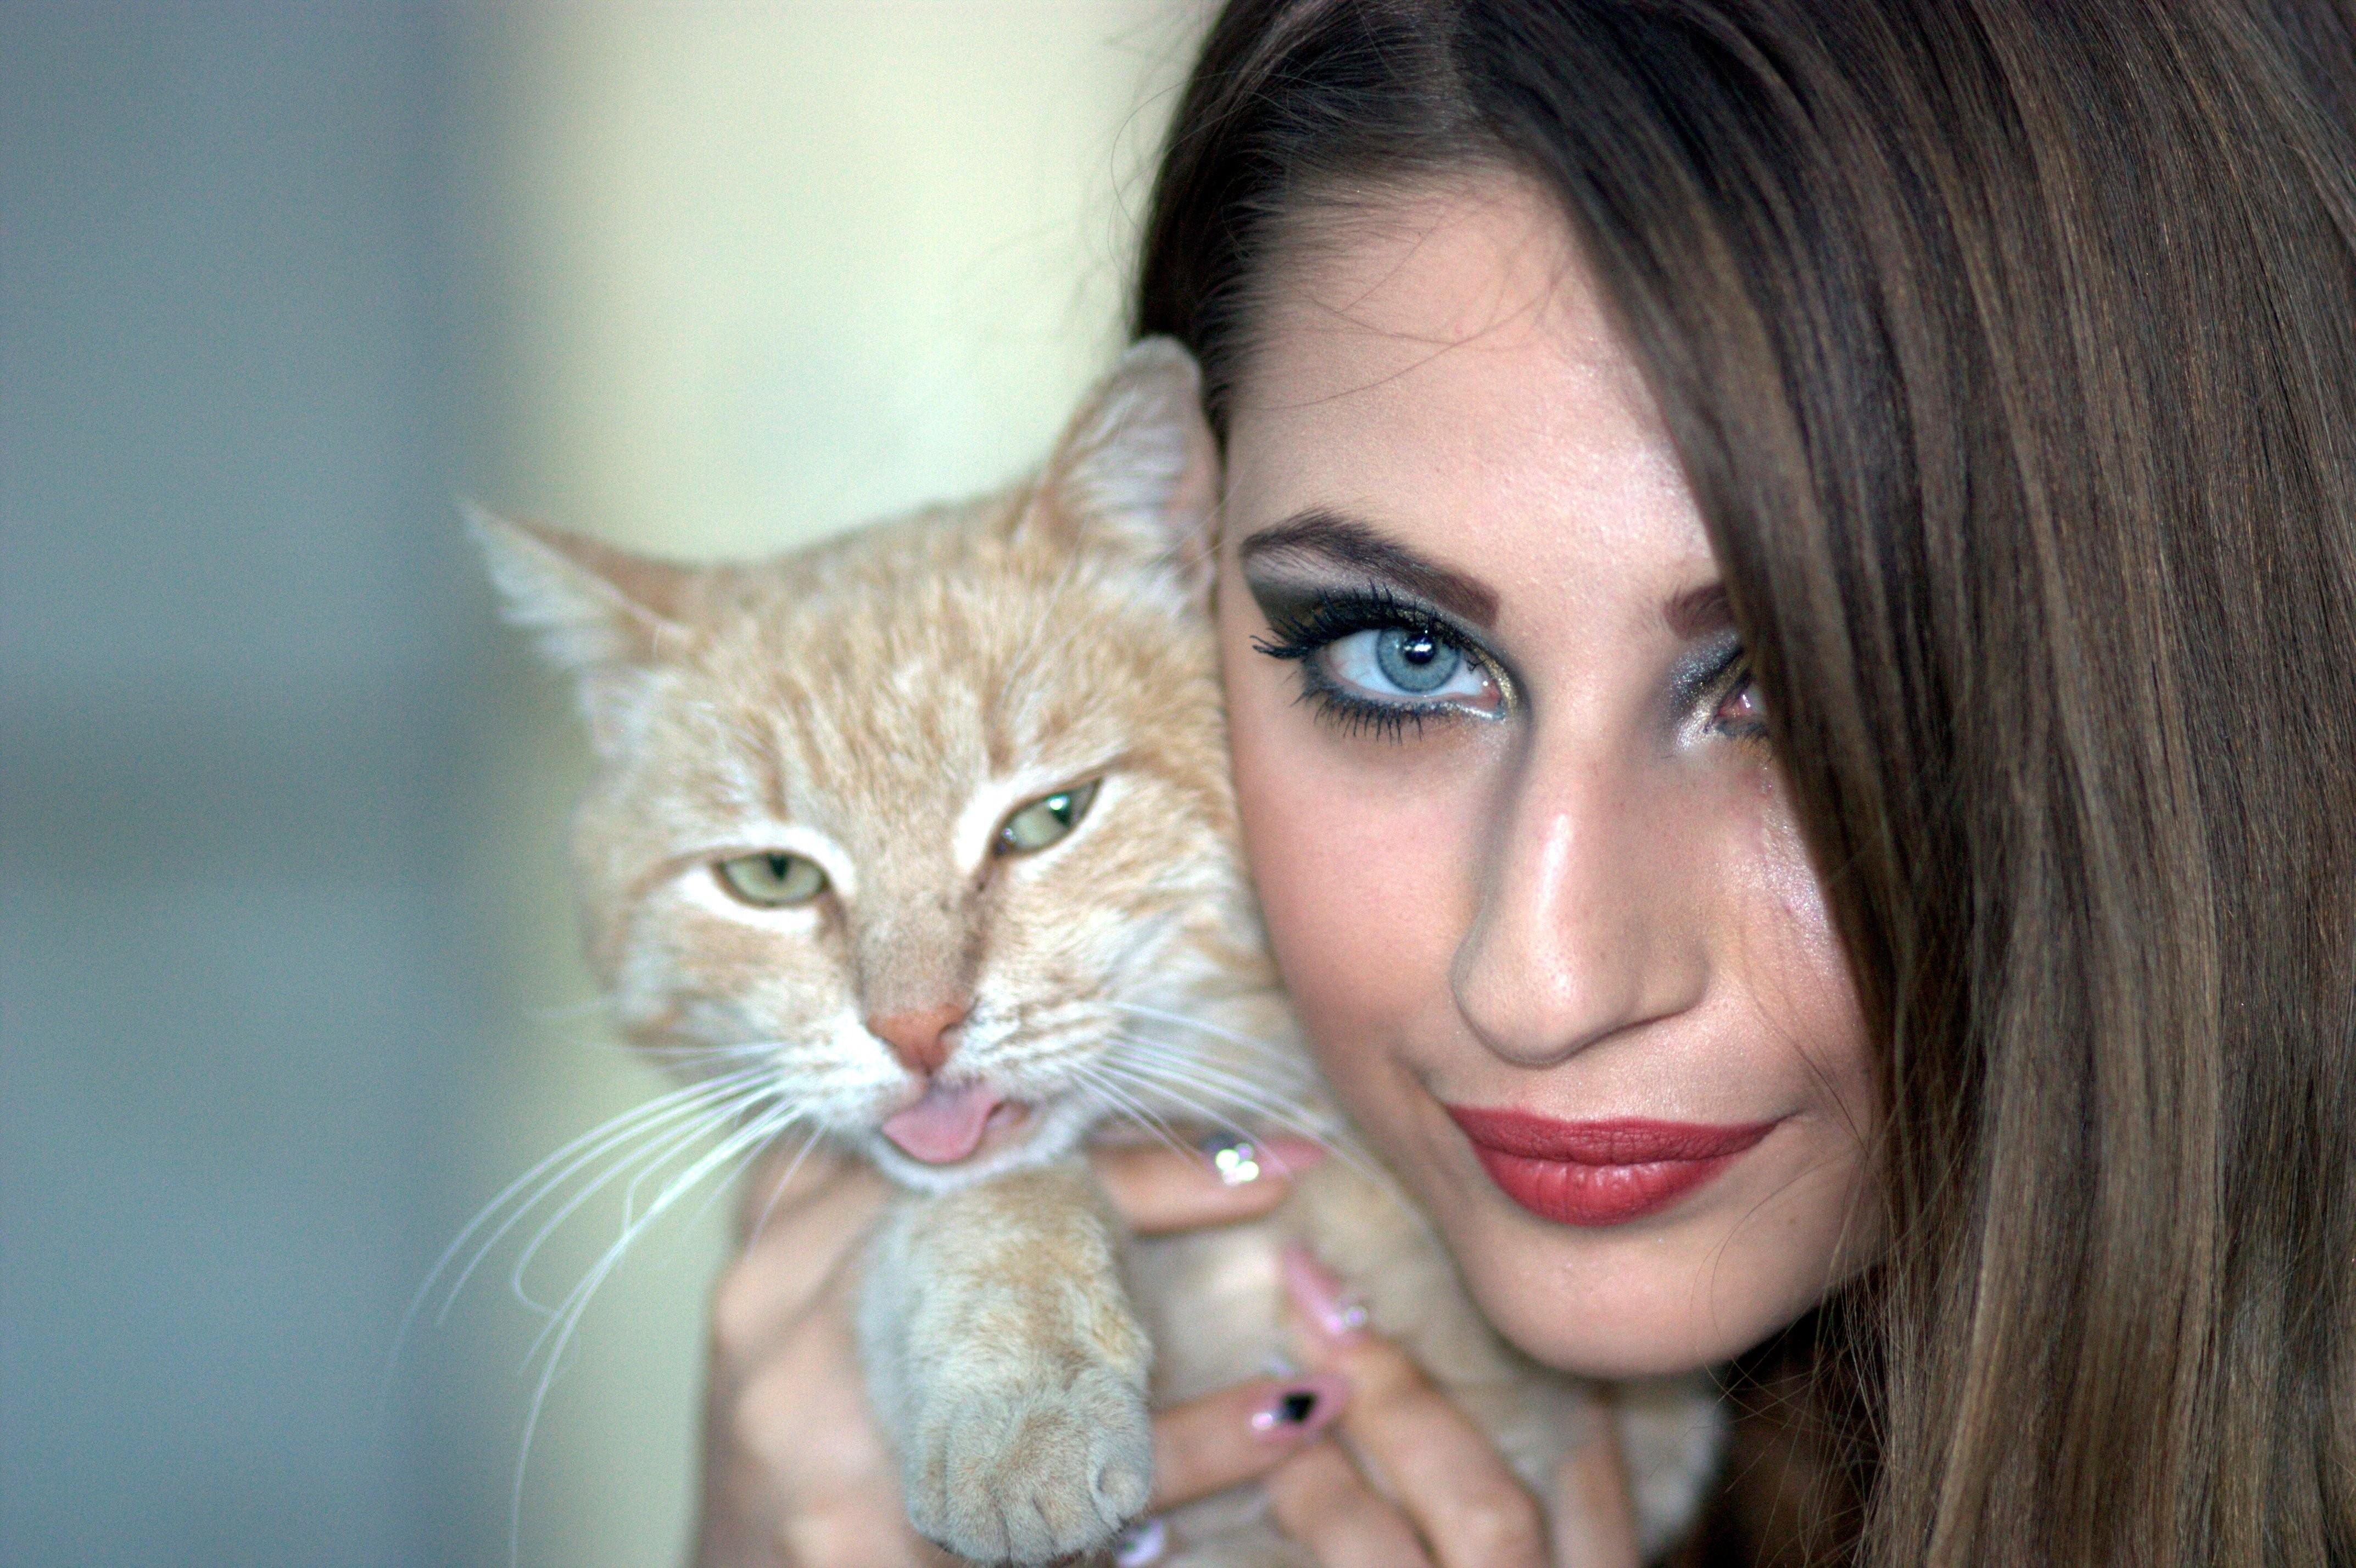 Картинка девушка с кошкой. Девушка кошка. Девушка с кошачьими глазами. Красивая девушка с кошкой. Девушка скошачими глазами.